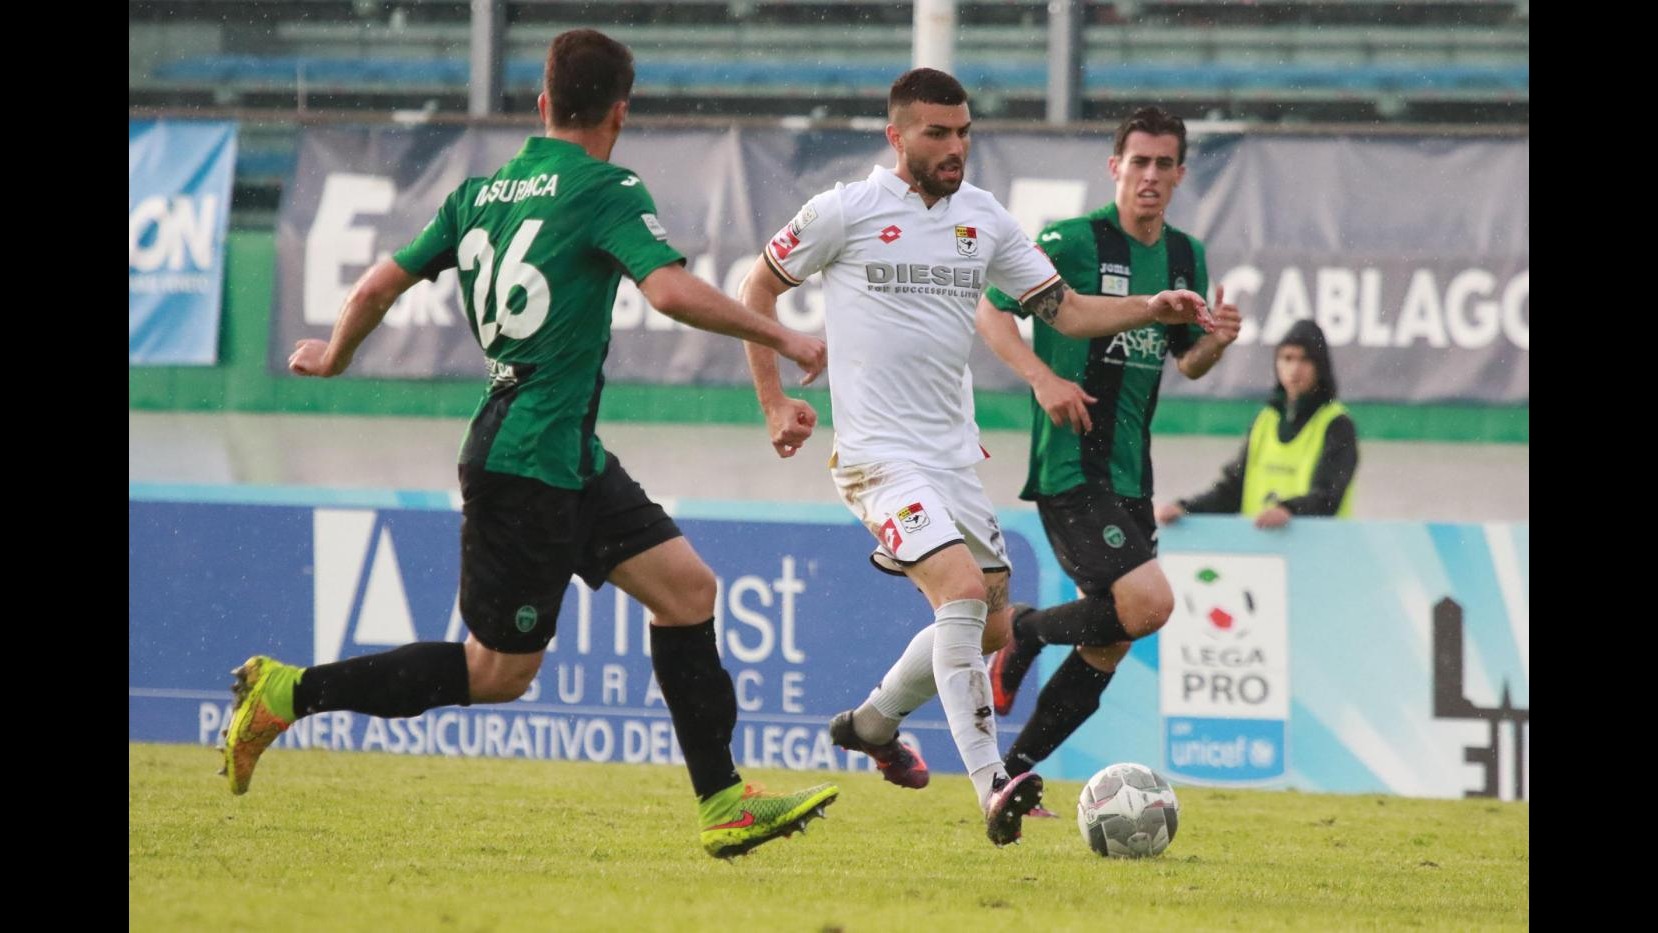 FOTO Lega Pro Playoff, Pordenone-Bassano 2-0